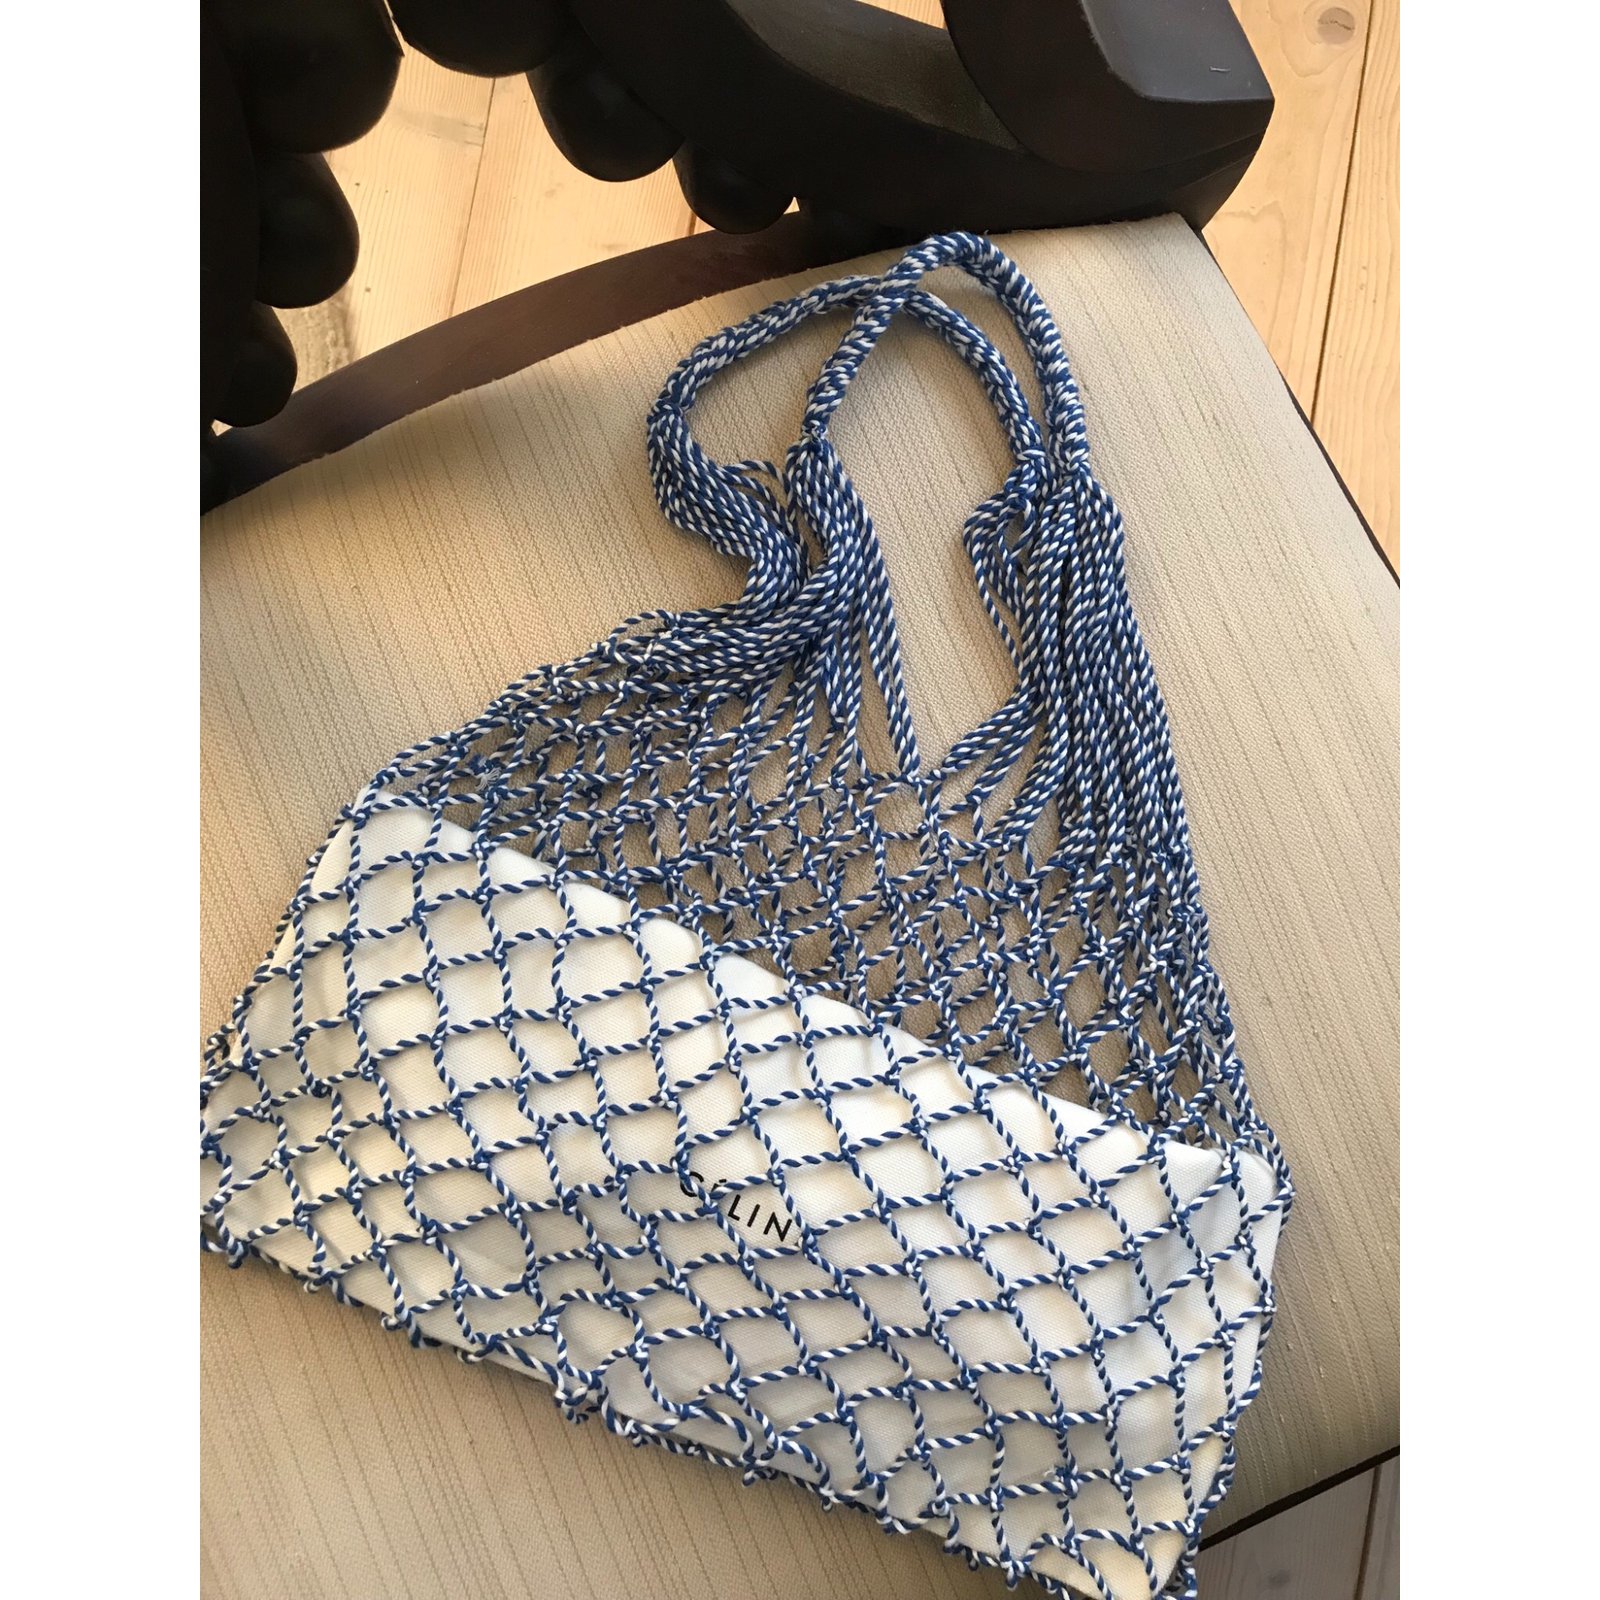 Céline Celine cotton net bag Handbags 